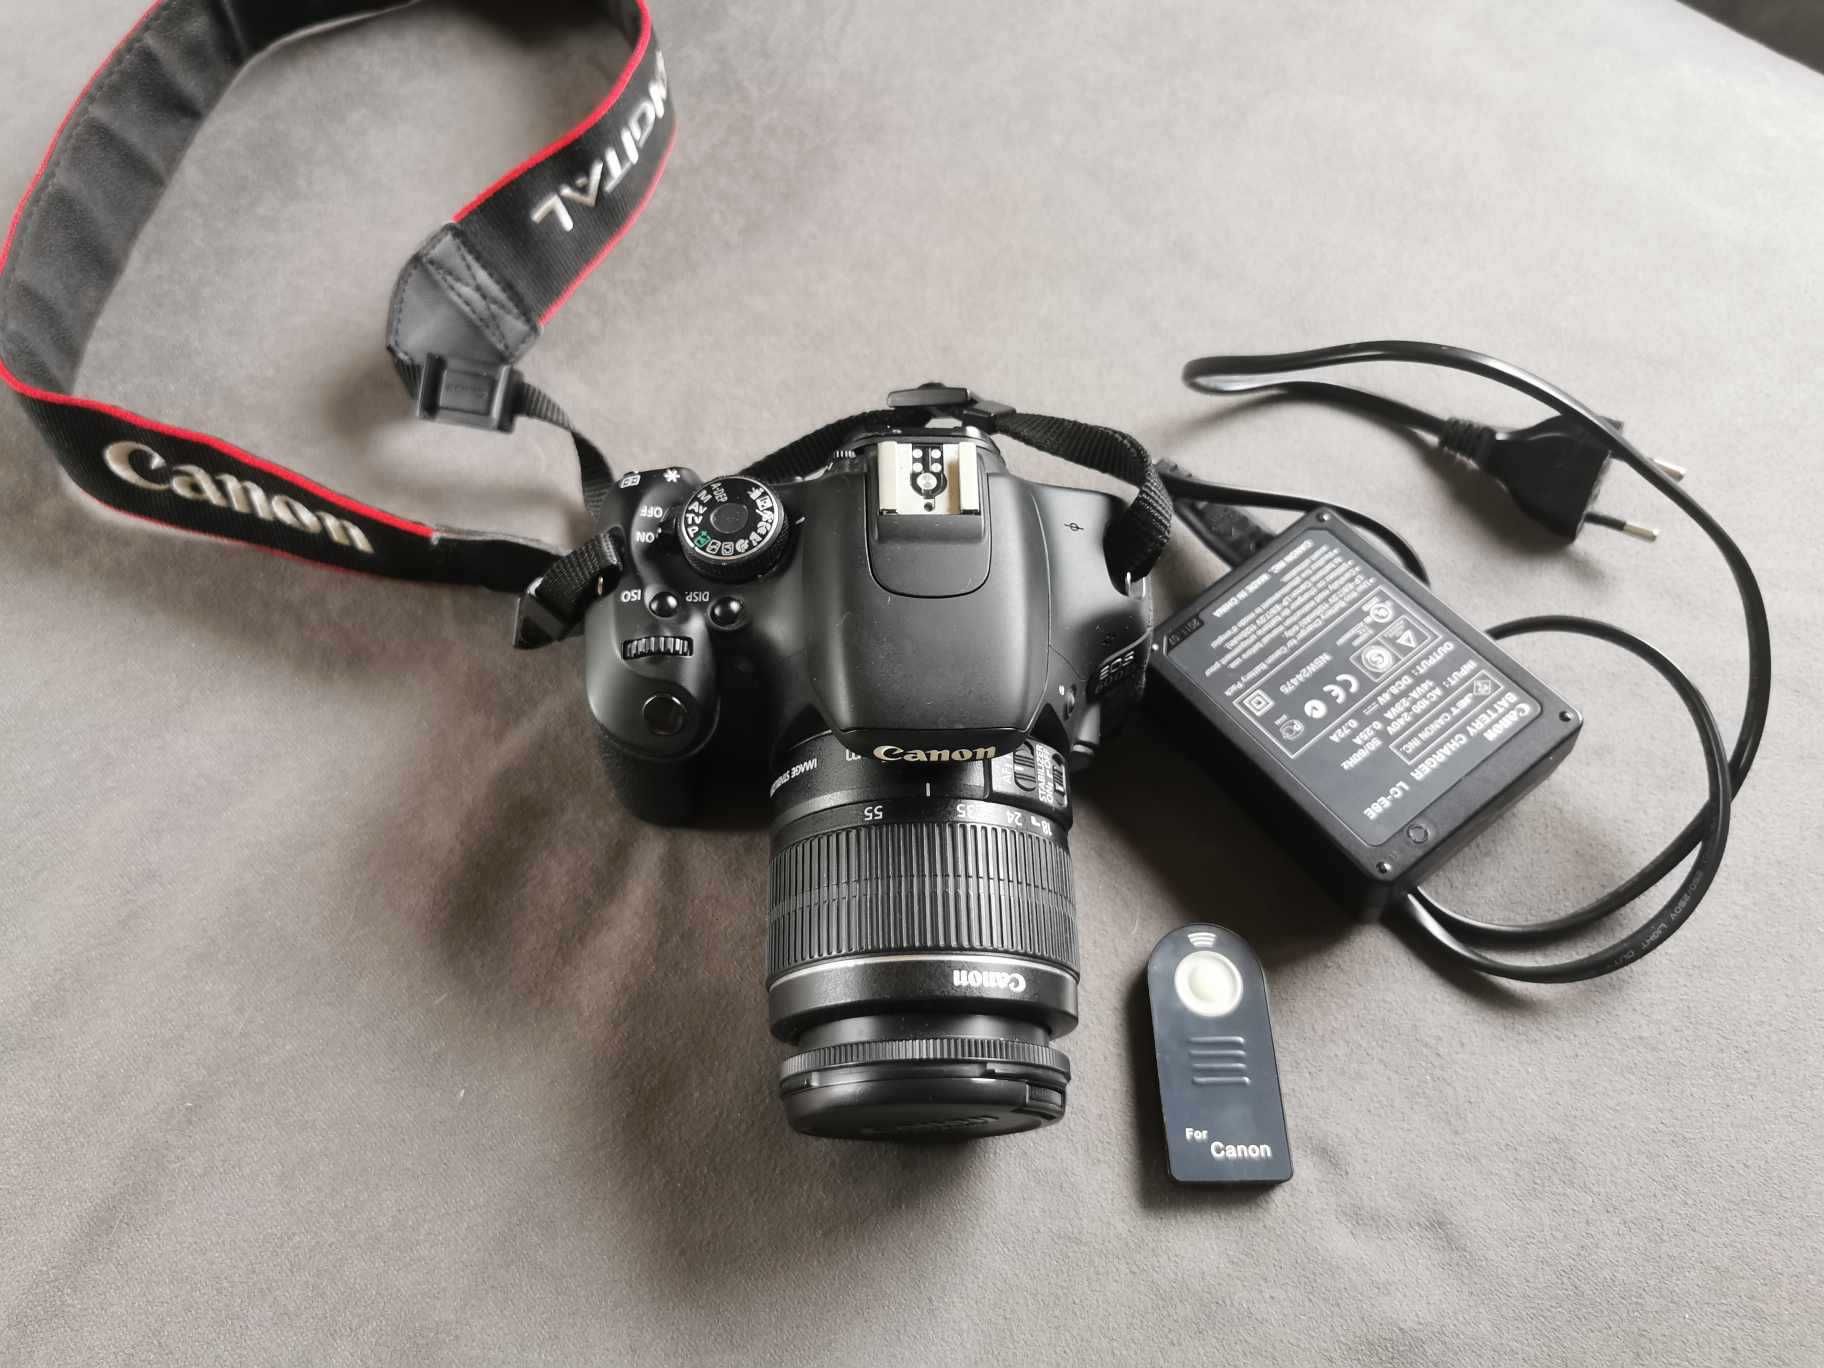 Lustrzanka Canon EOS 600D